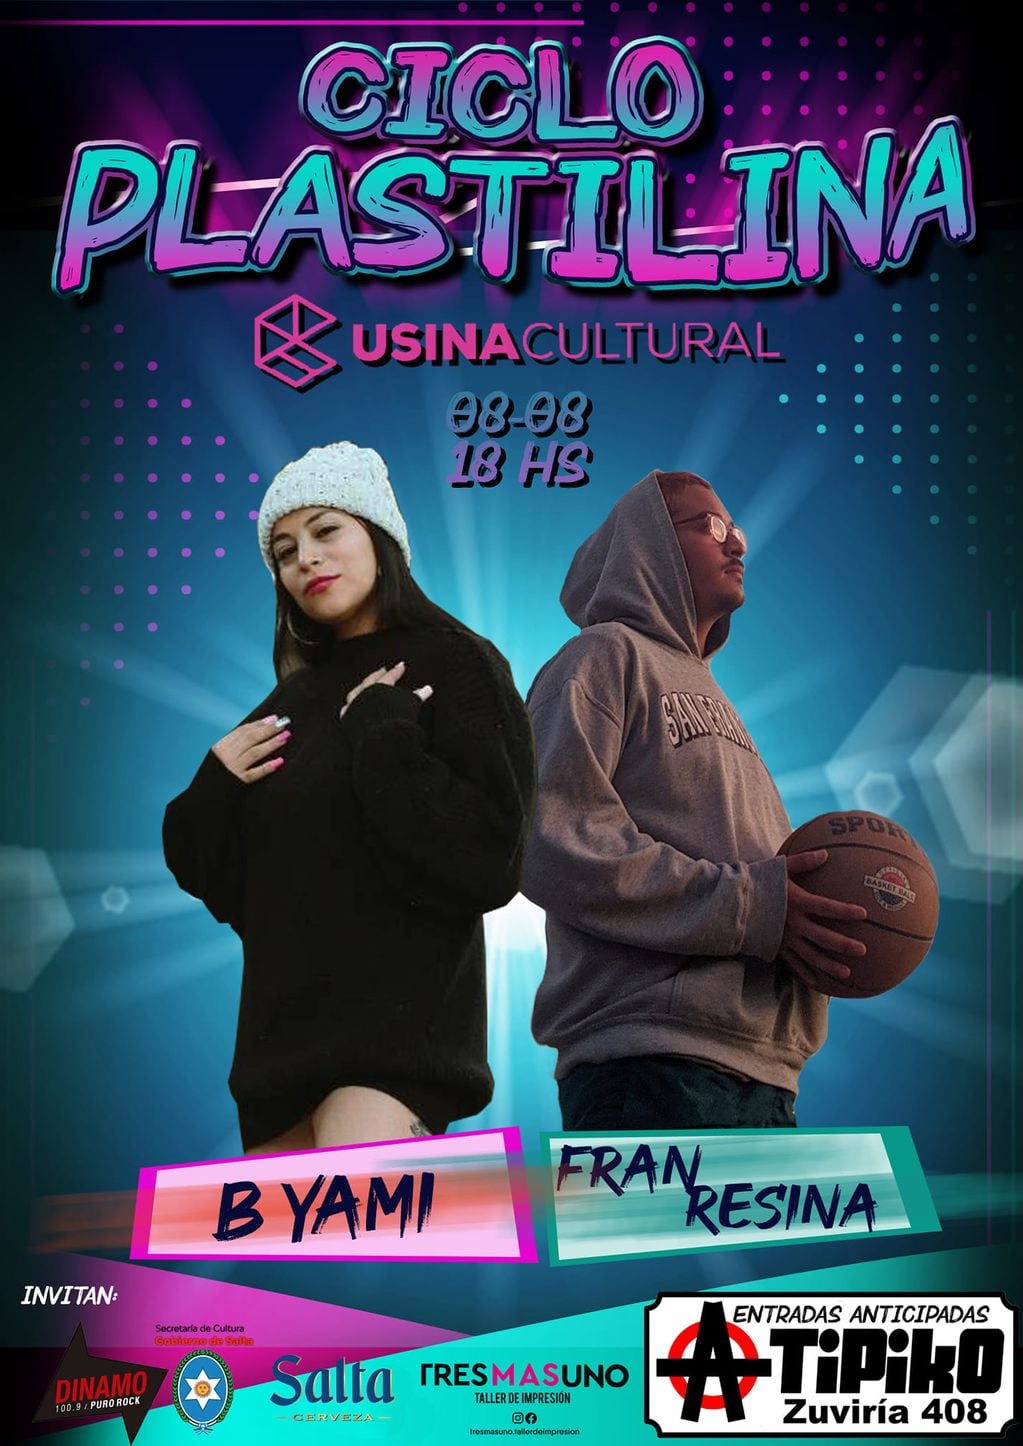 En esta ocasión, se presentan B-Yami y Fran Resina en la Usina Cultural.